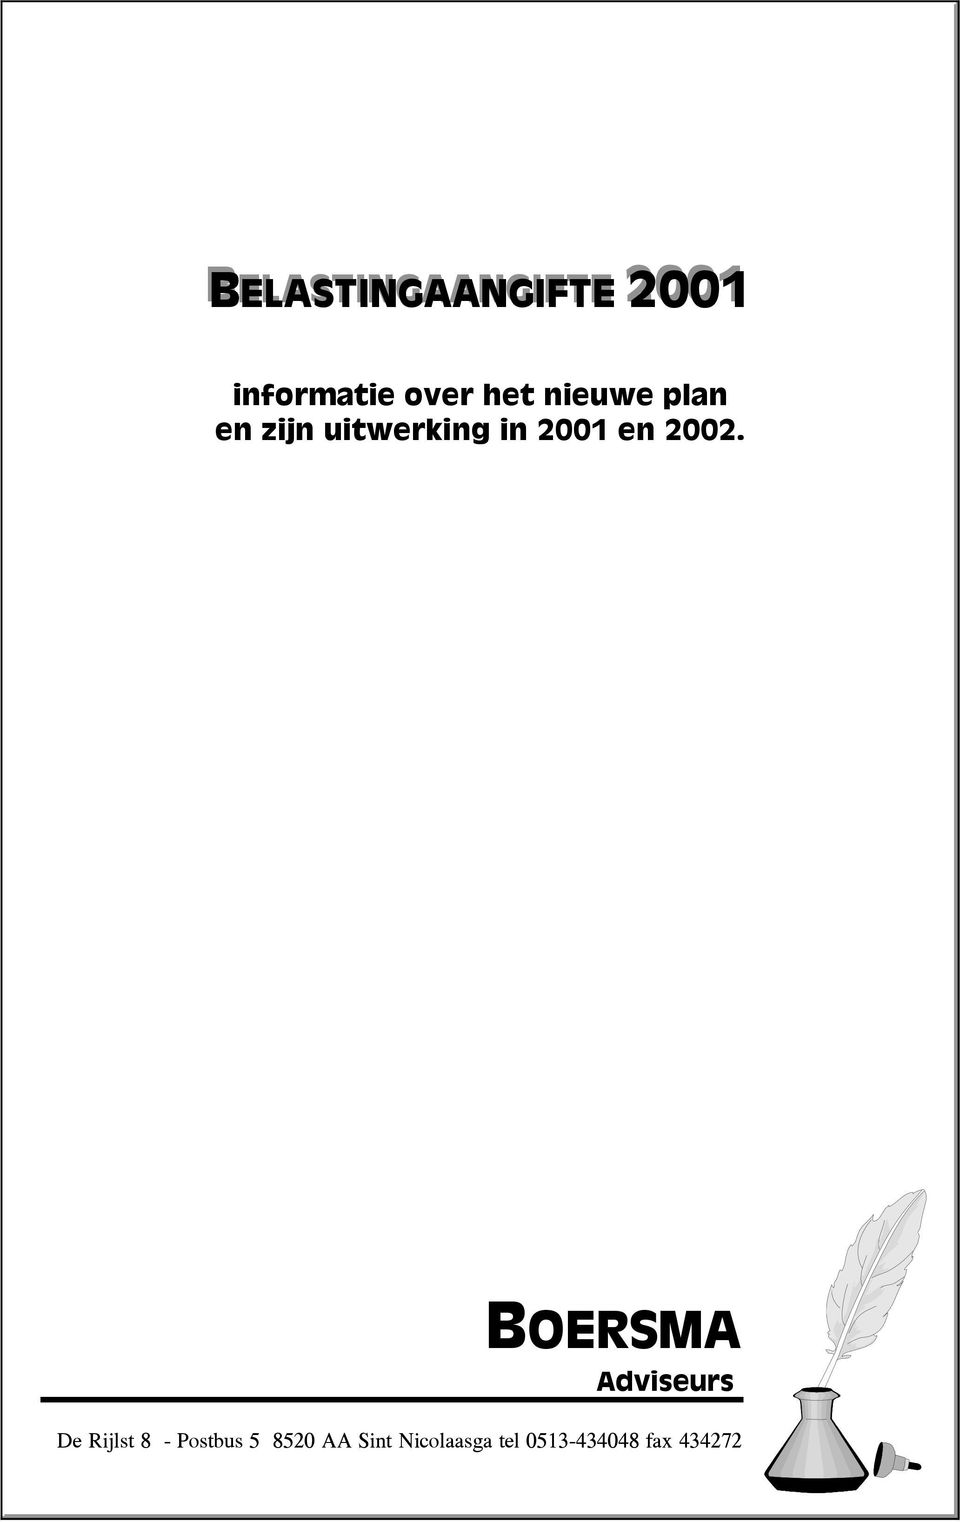 2002. BOERSMA Adviseurs De Rijlst 8 - Postbus